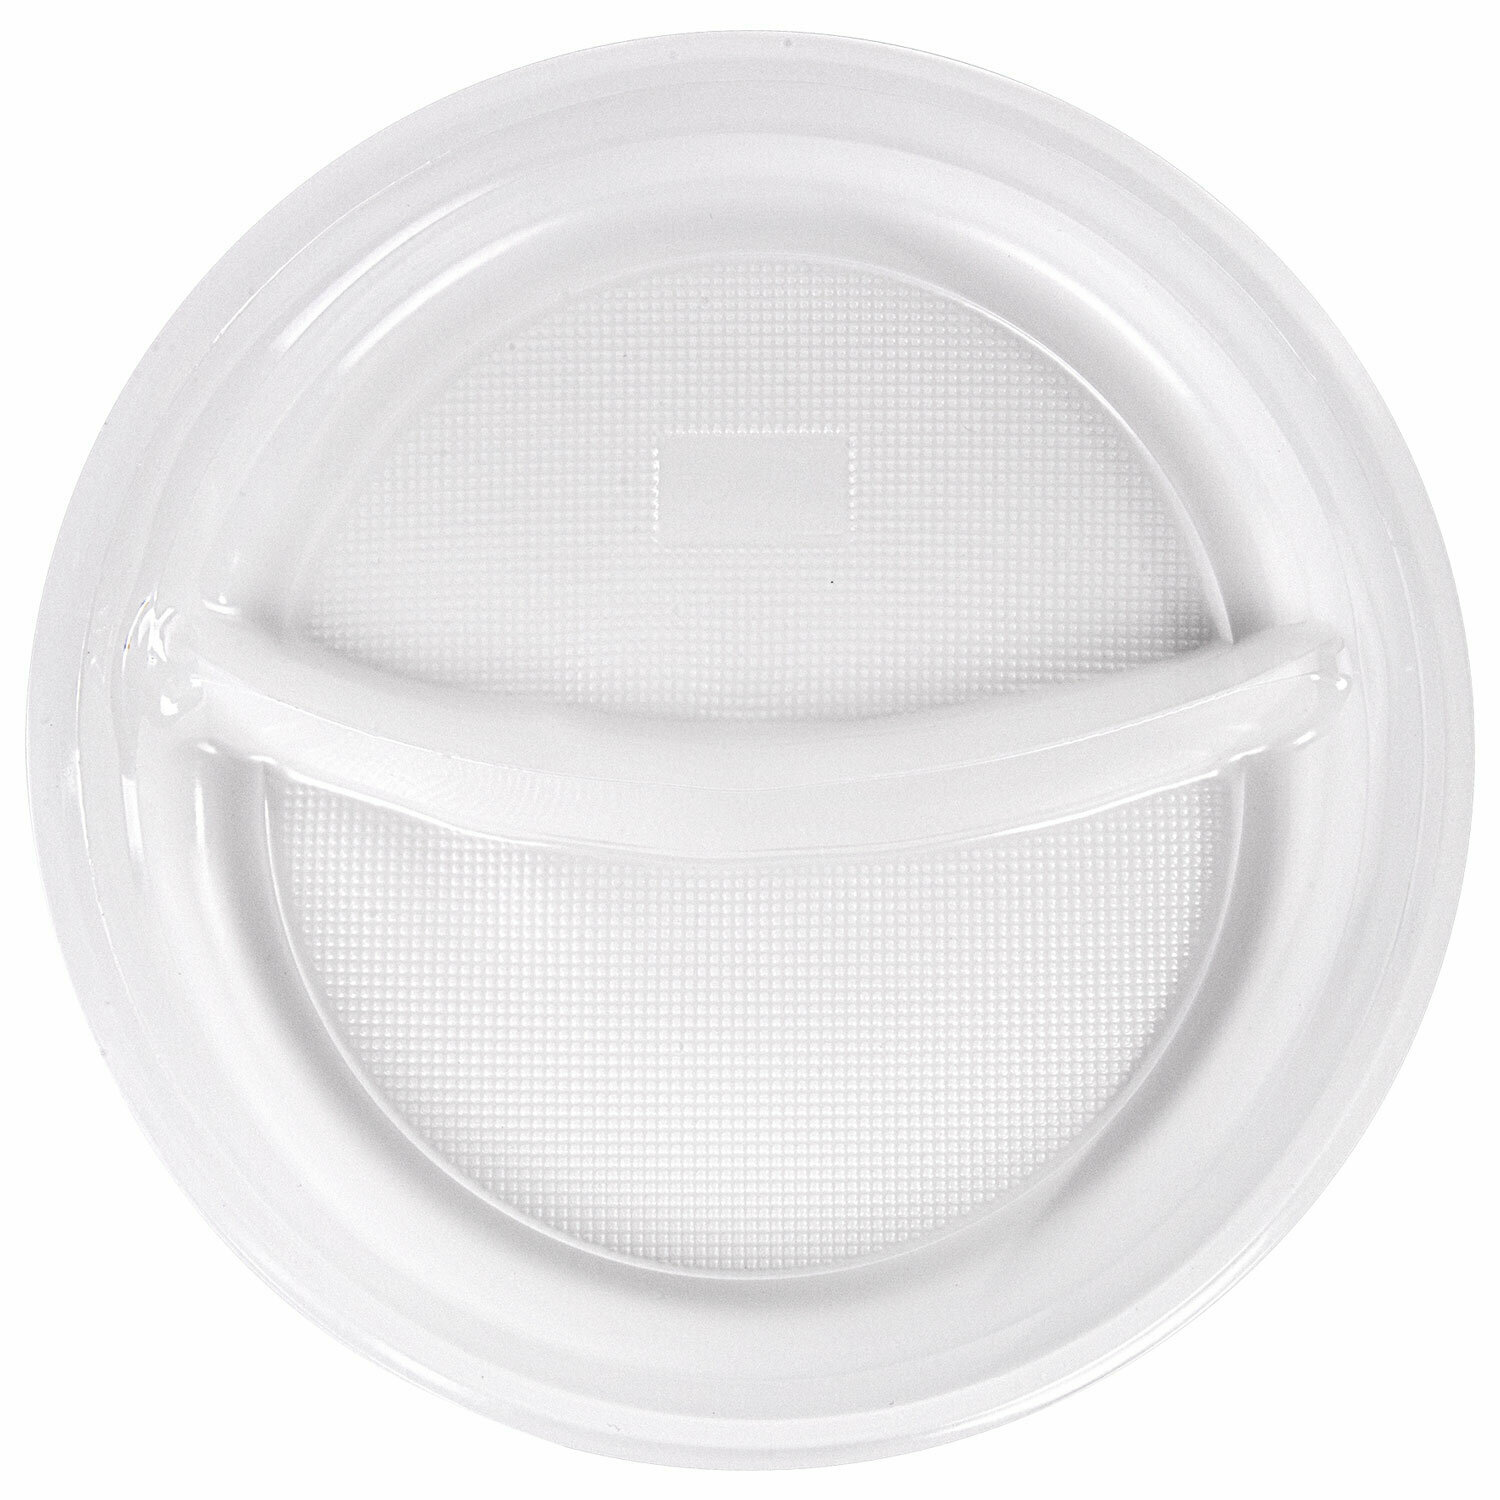 Одноразовые пластиковые плоские тарелки (одноразовая посуда) 2-х секционные Комплект 100 шт. 220 мм, PP, холодное/горячее, Laima Стандарт, 608768